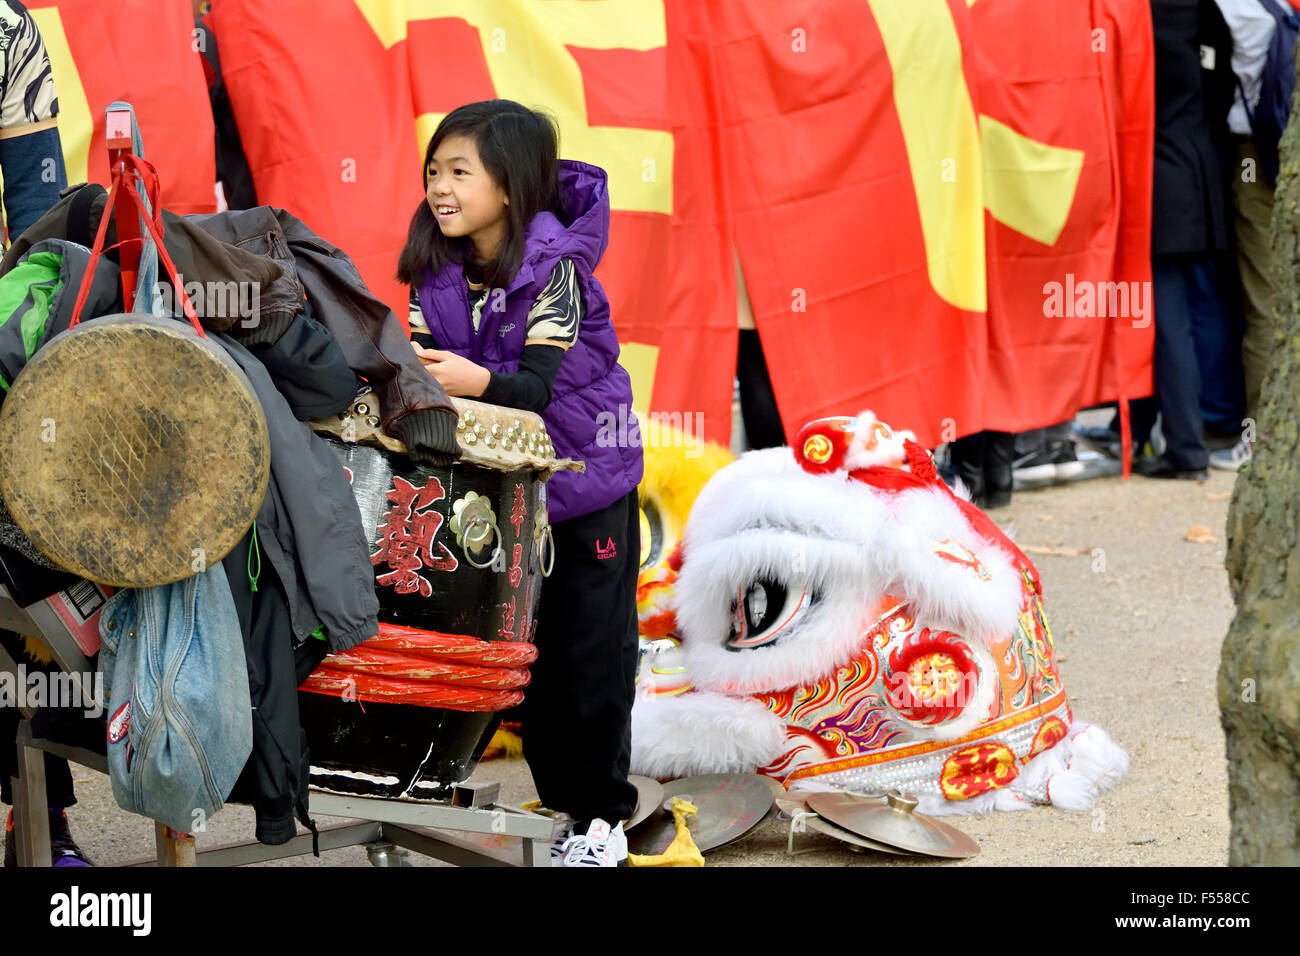 Londres, Angleterre, Royaume-Uni. Jeune fille chinoise avec des instruments de musique traditionnels et costume dragon au cours de la visite de Xi Jinping en 2015.. Banque D'Images